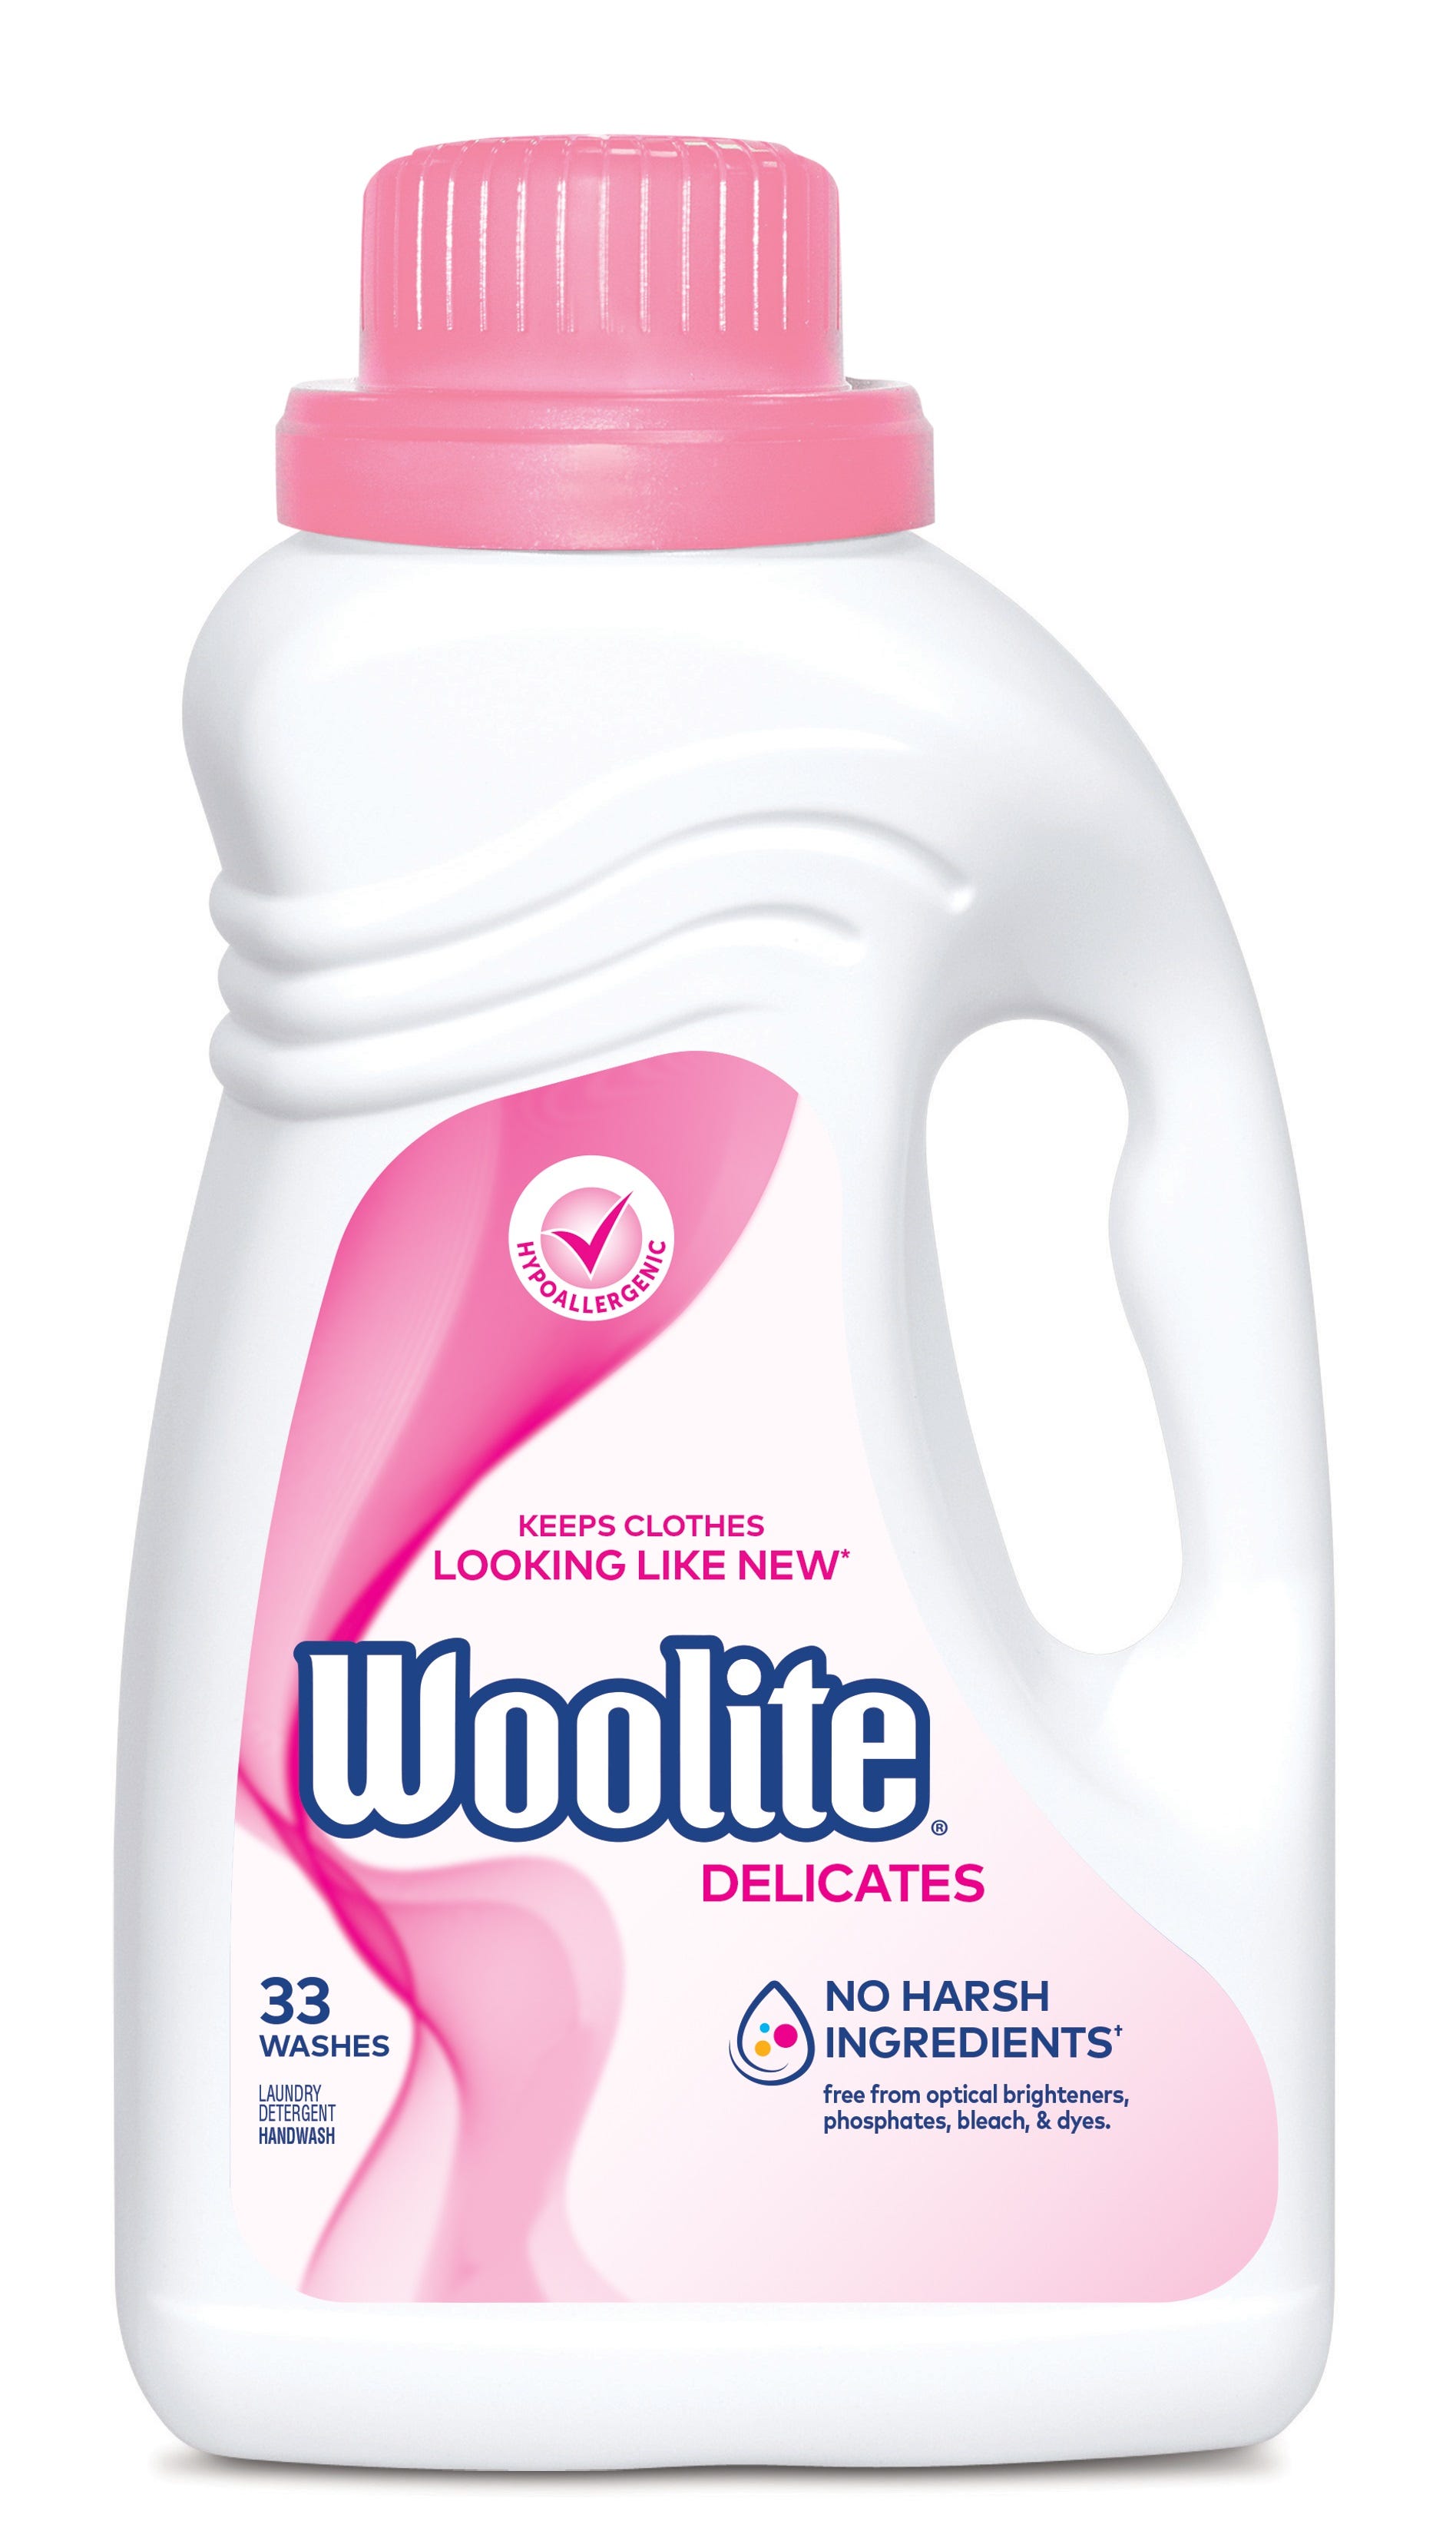 woolite delicates